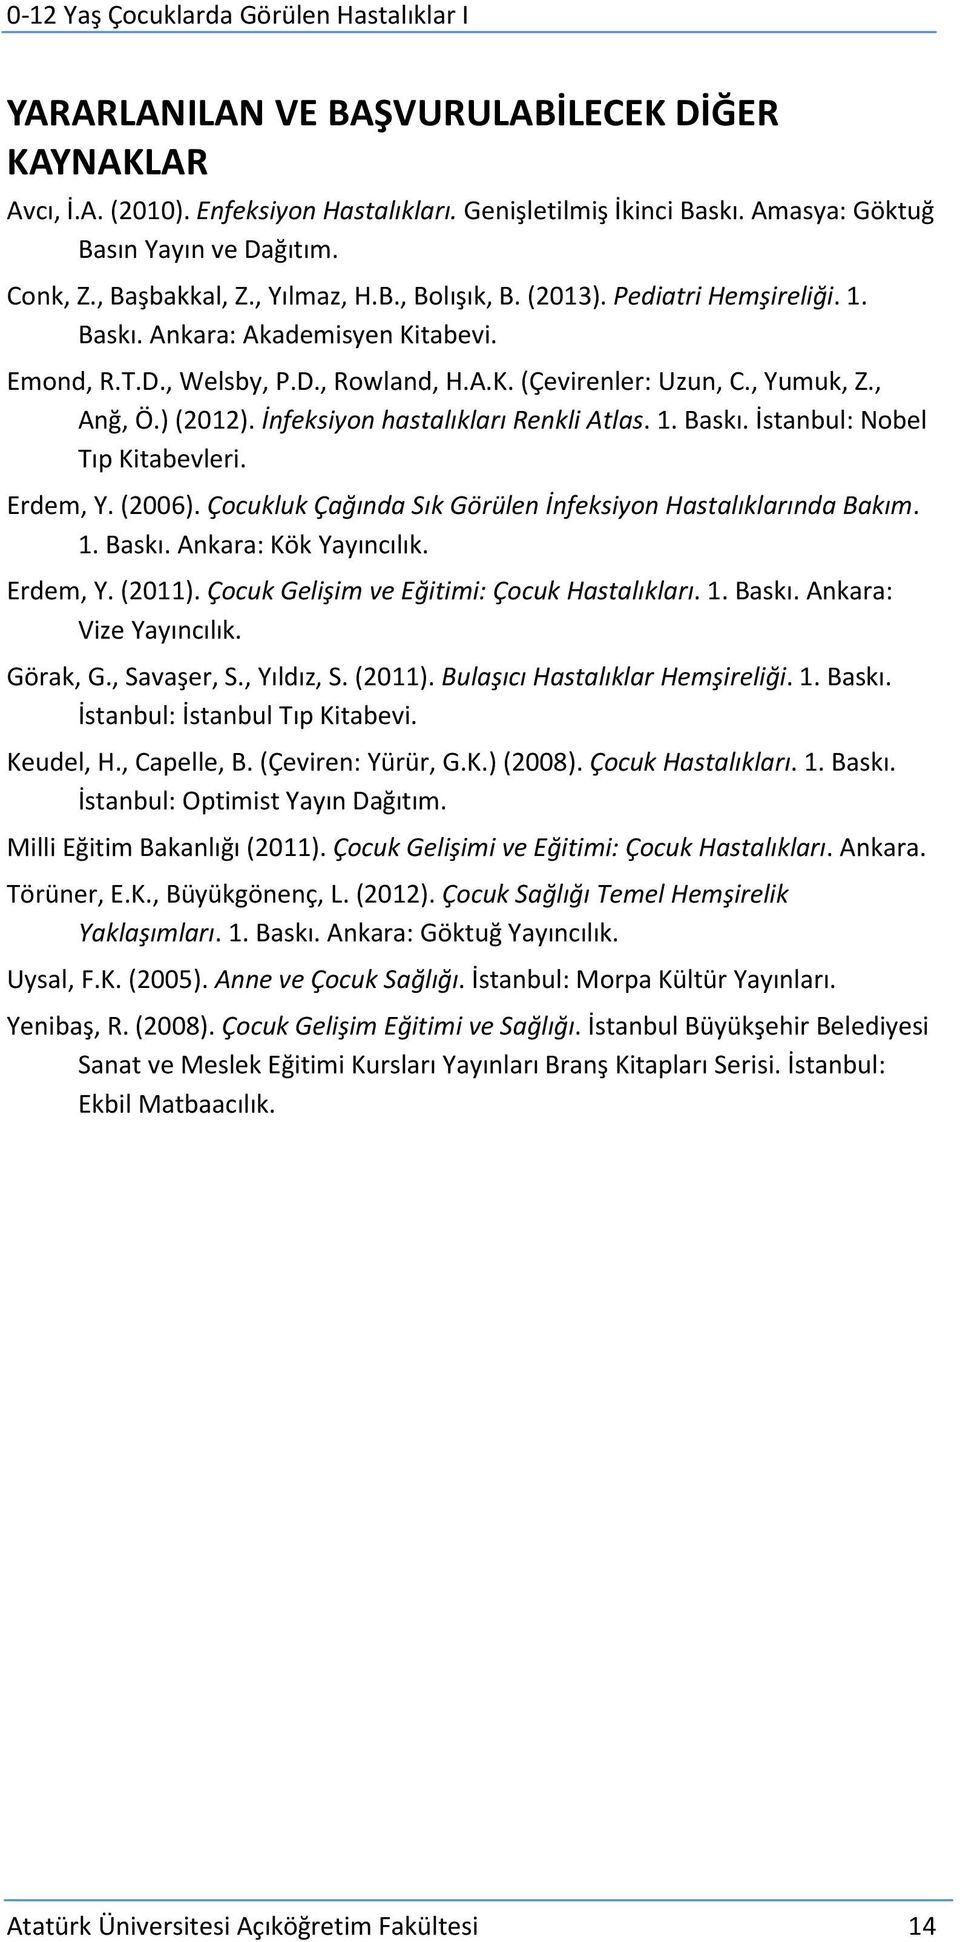 İnfeksiyon hastalıkları Renkli Atlas. 1. Baskı. İstanbul: Nobel Tıp Kitabevleri. Erdem, Y. (2006). Çocukluk Çağında Sık Görülen İnfeksiyon Hastalıklarında Bakım. 1. Baskı. Ankara: Kök Yayıncılık.